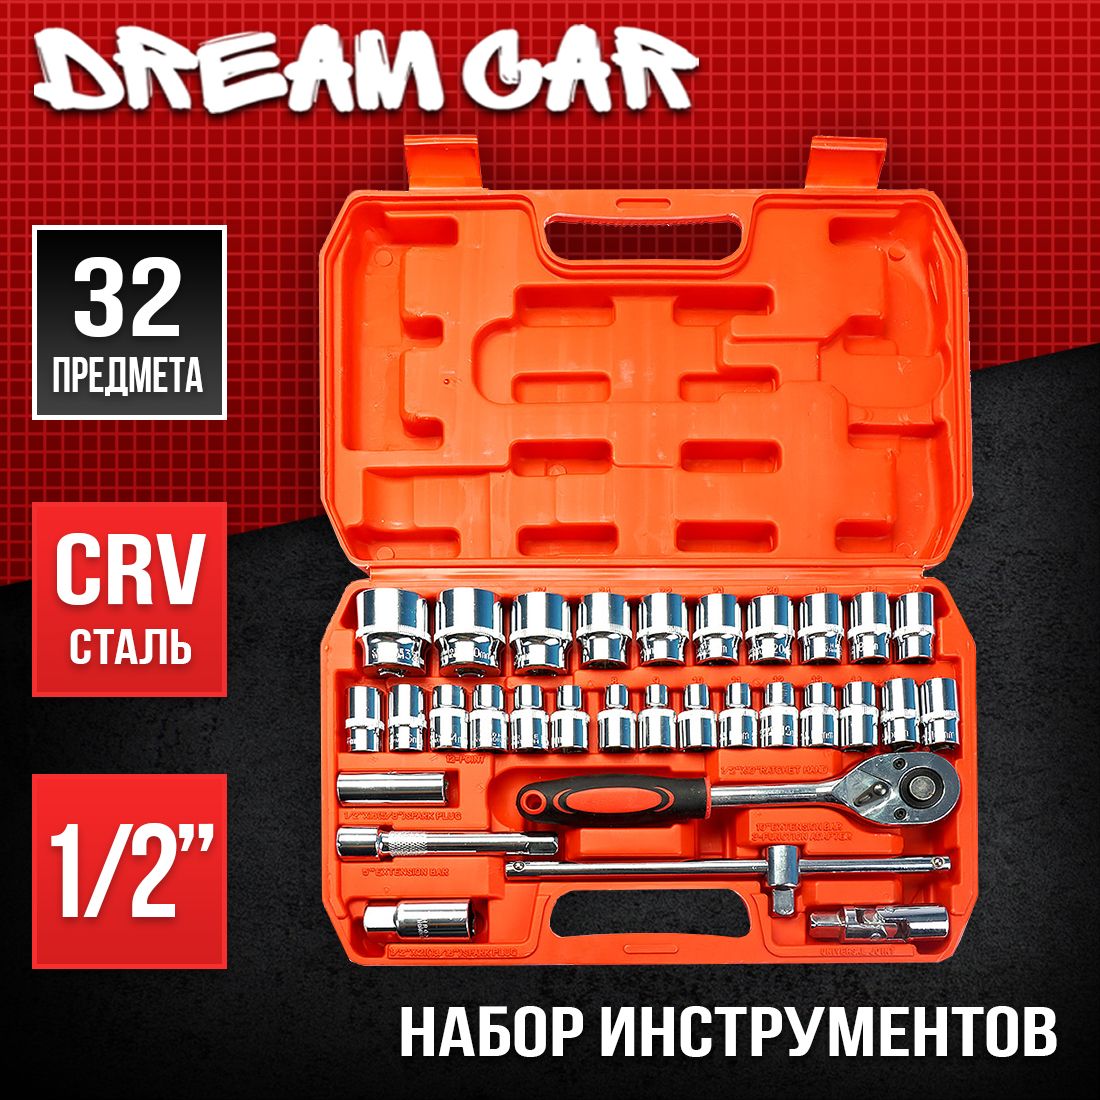  автомобильного инструмента 32шт по цене 3 000 руб.  | DreamCar